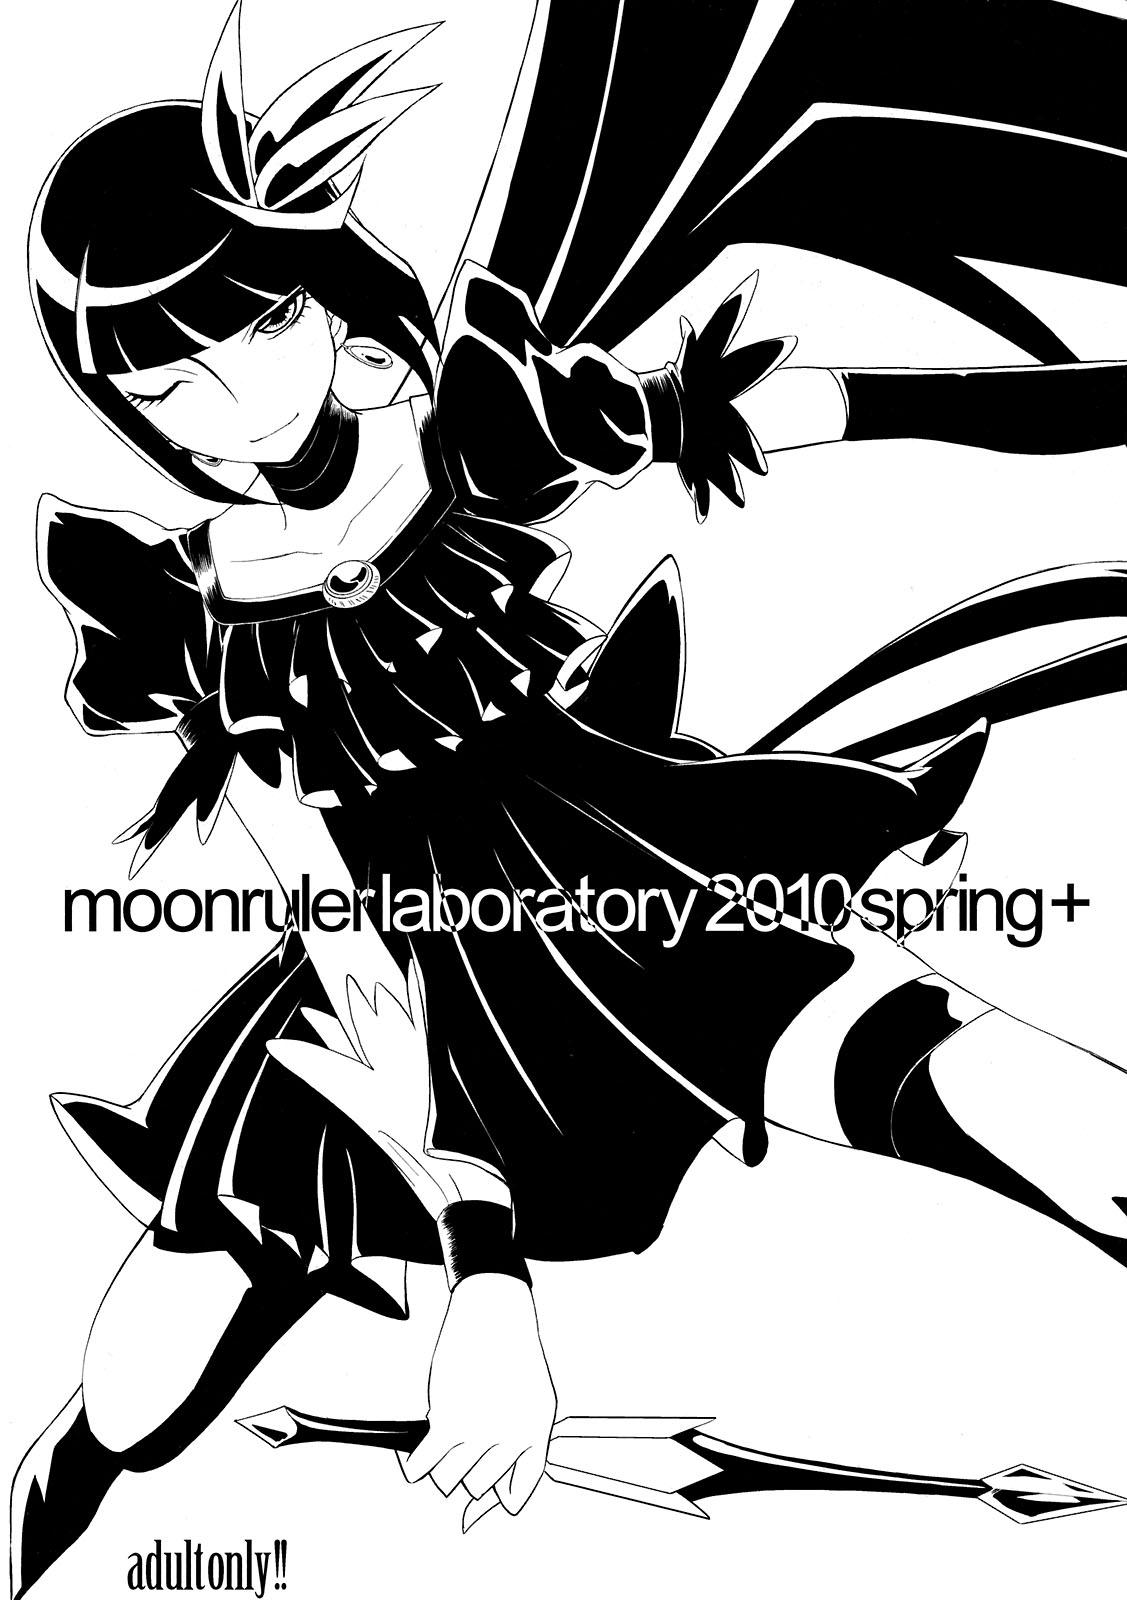 moonrulerlaboratory 2010 spring+ 1